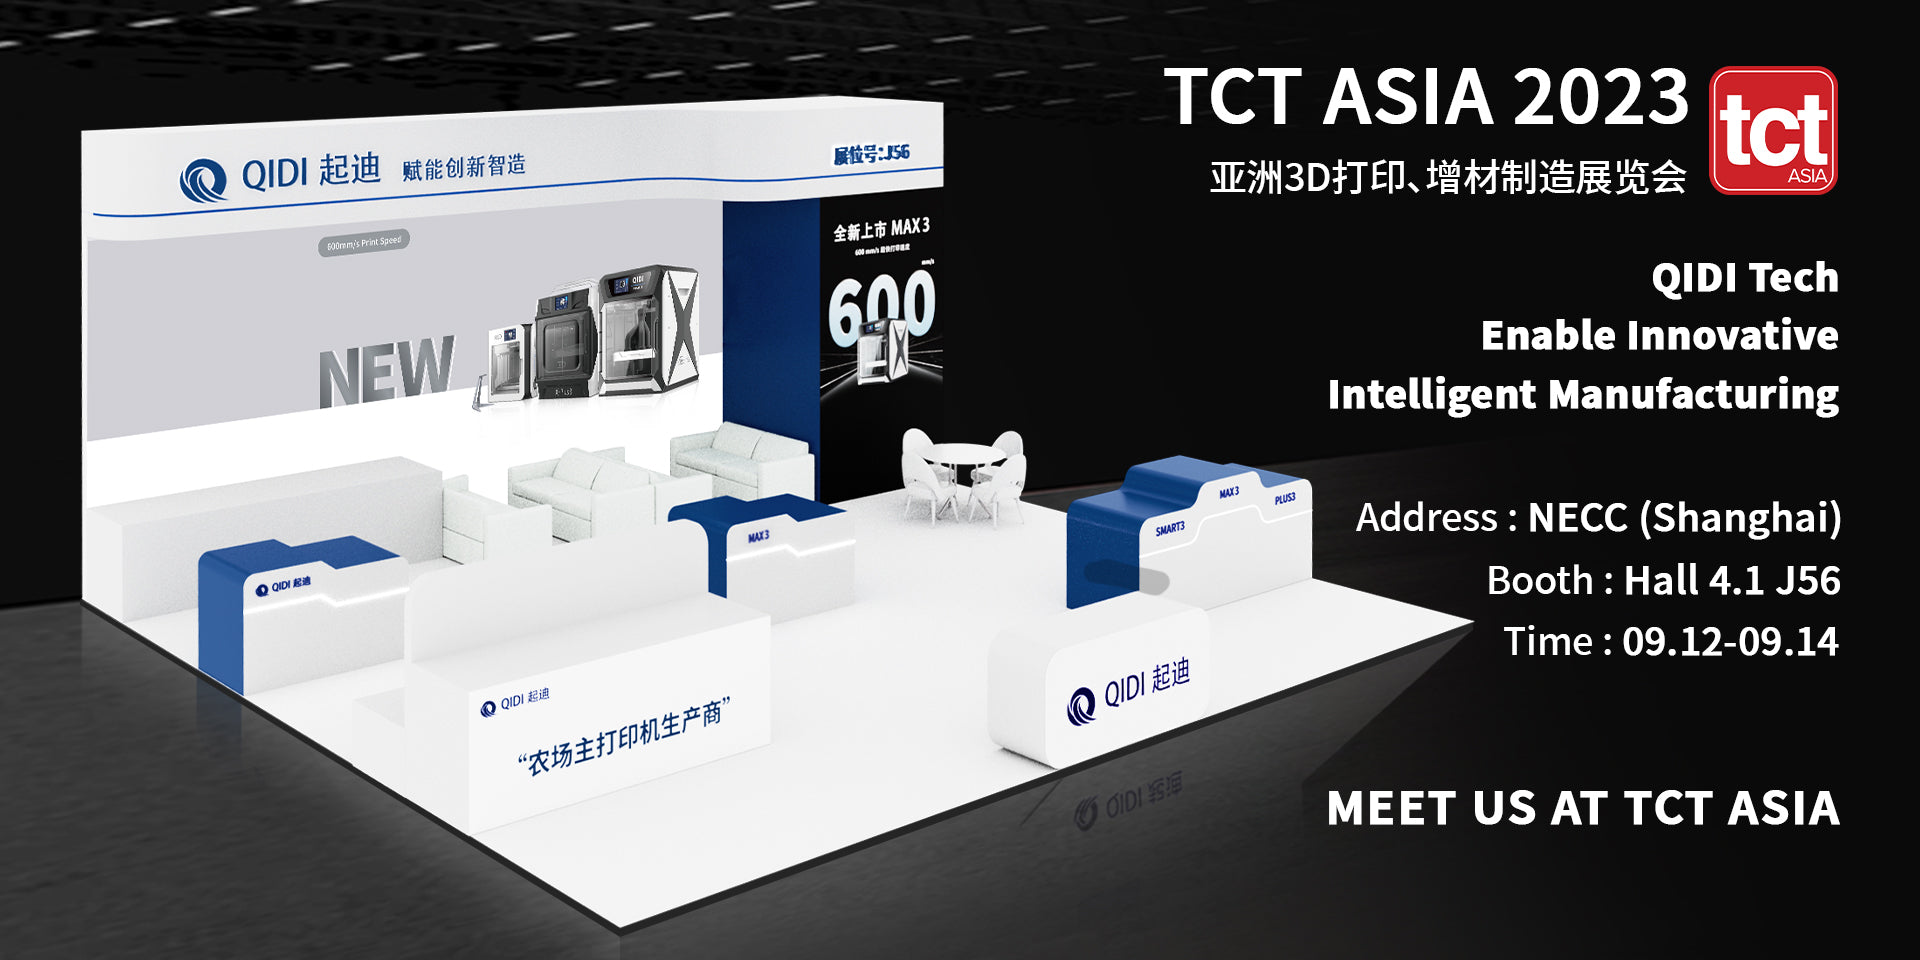 A QIDI TECH estreia novas impressoras 3D na TCT Asia